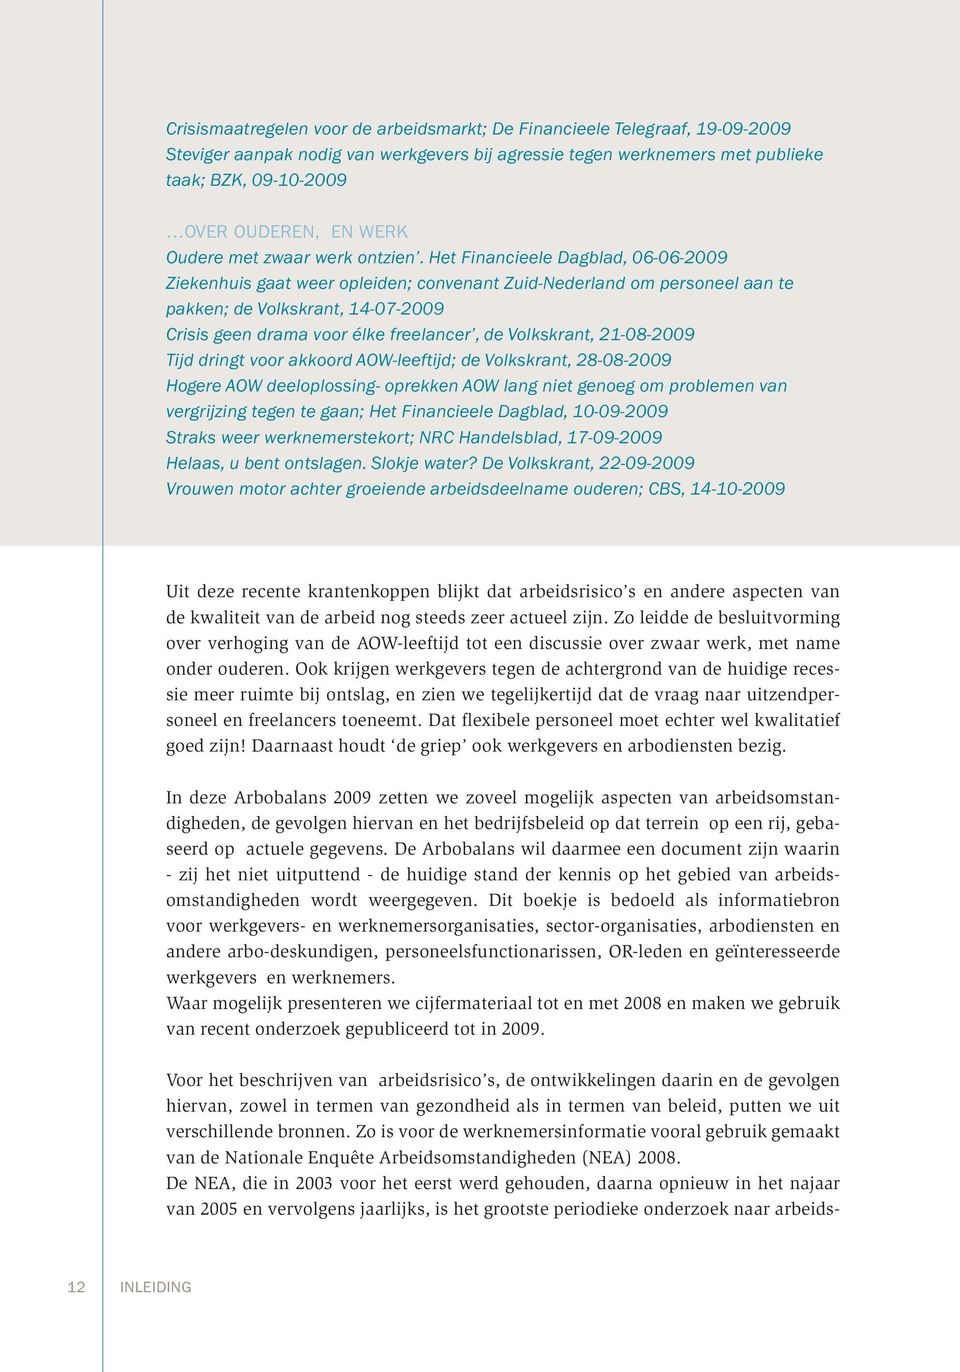 Het Financieele Dagblad, 06-06-2009 Ziekenhuis gaat weer opleiden; convenant Zuid-Nederland om personeel aan te pakken; de Volkskrant, 14-07-2009 Crisis geen drama voor élke freelancer, de